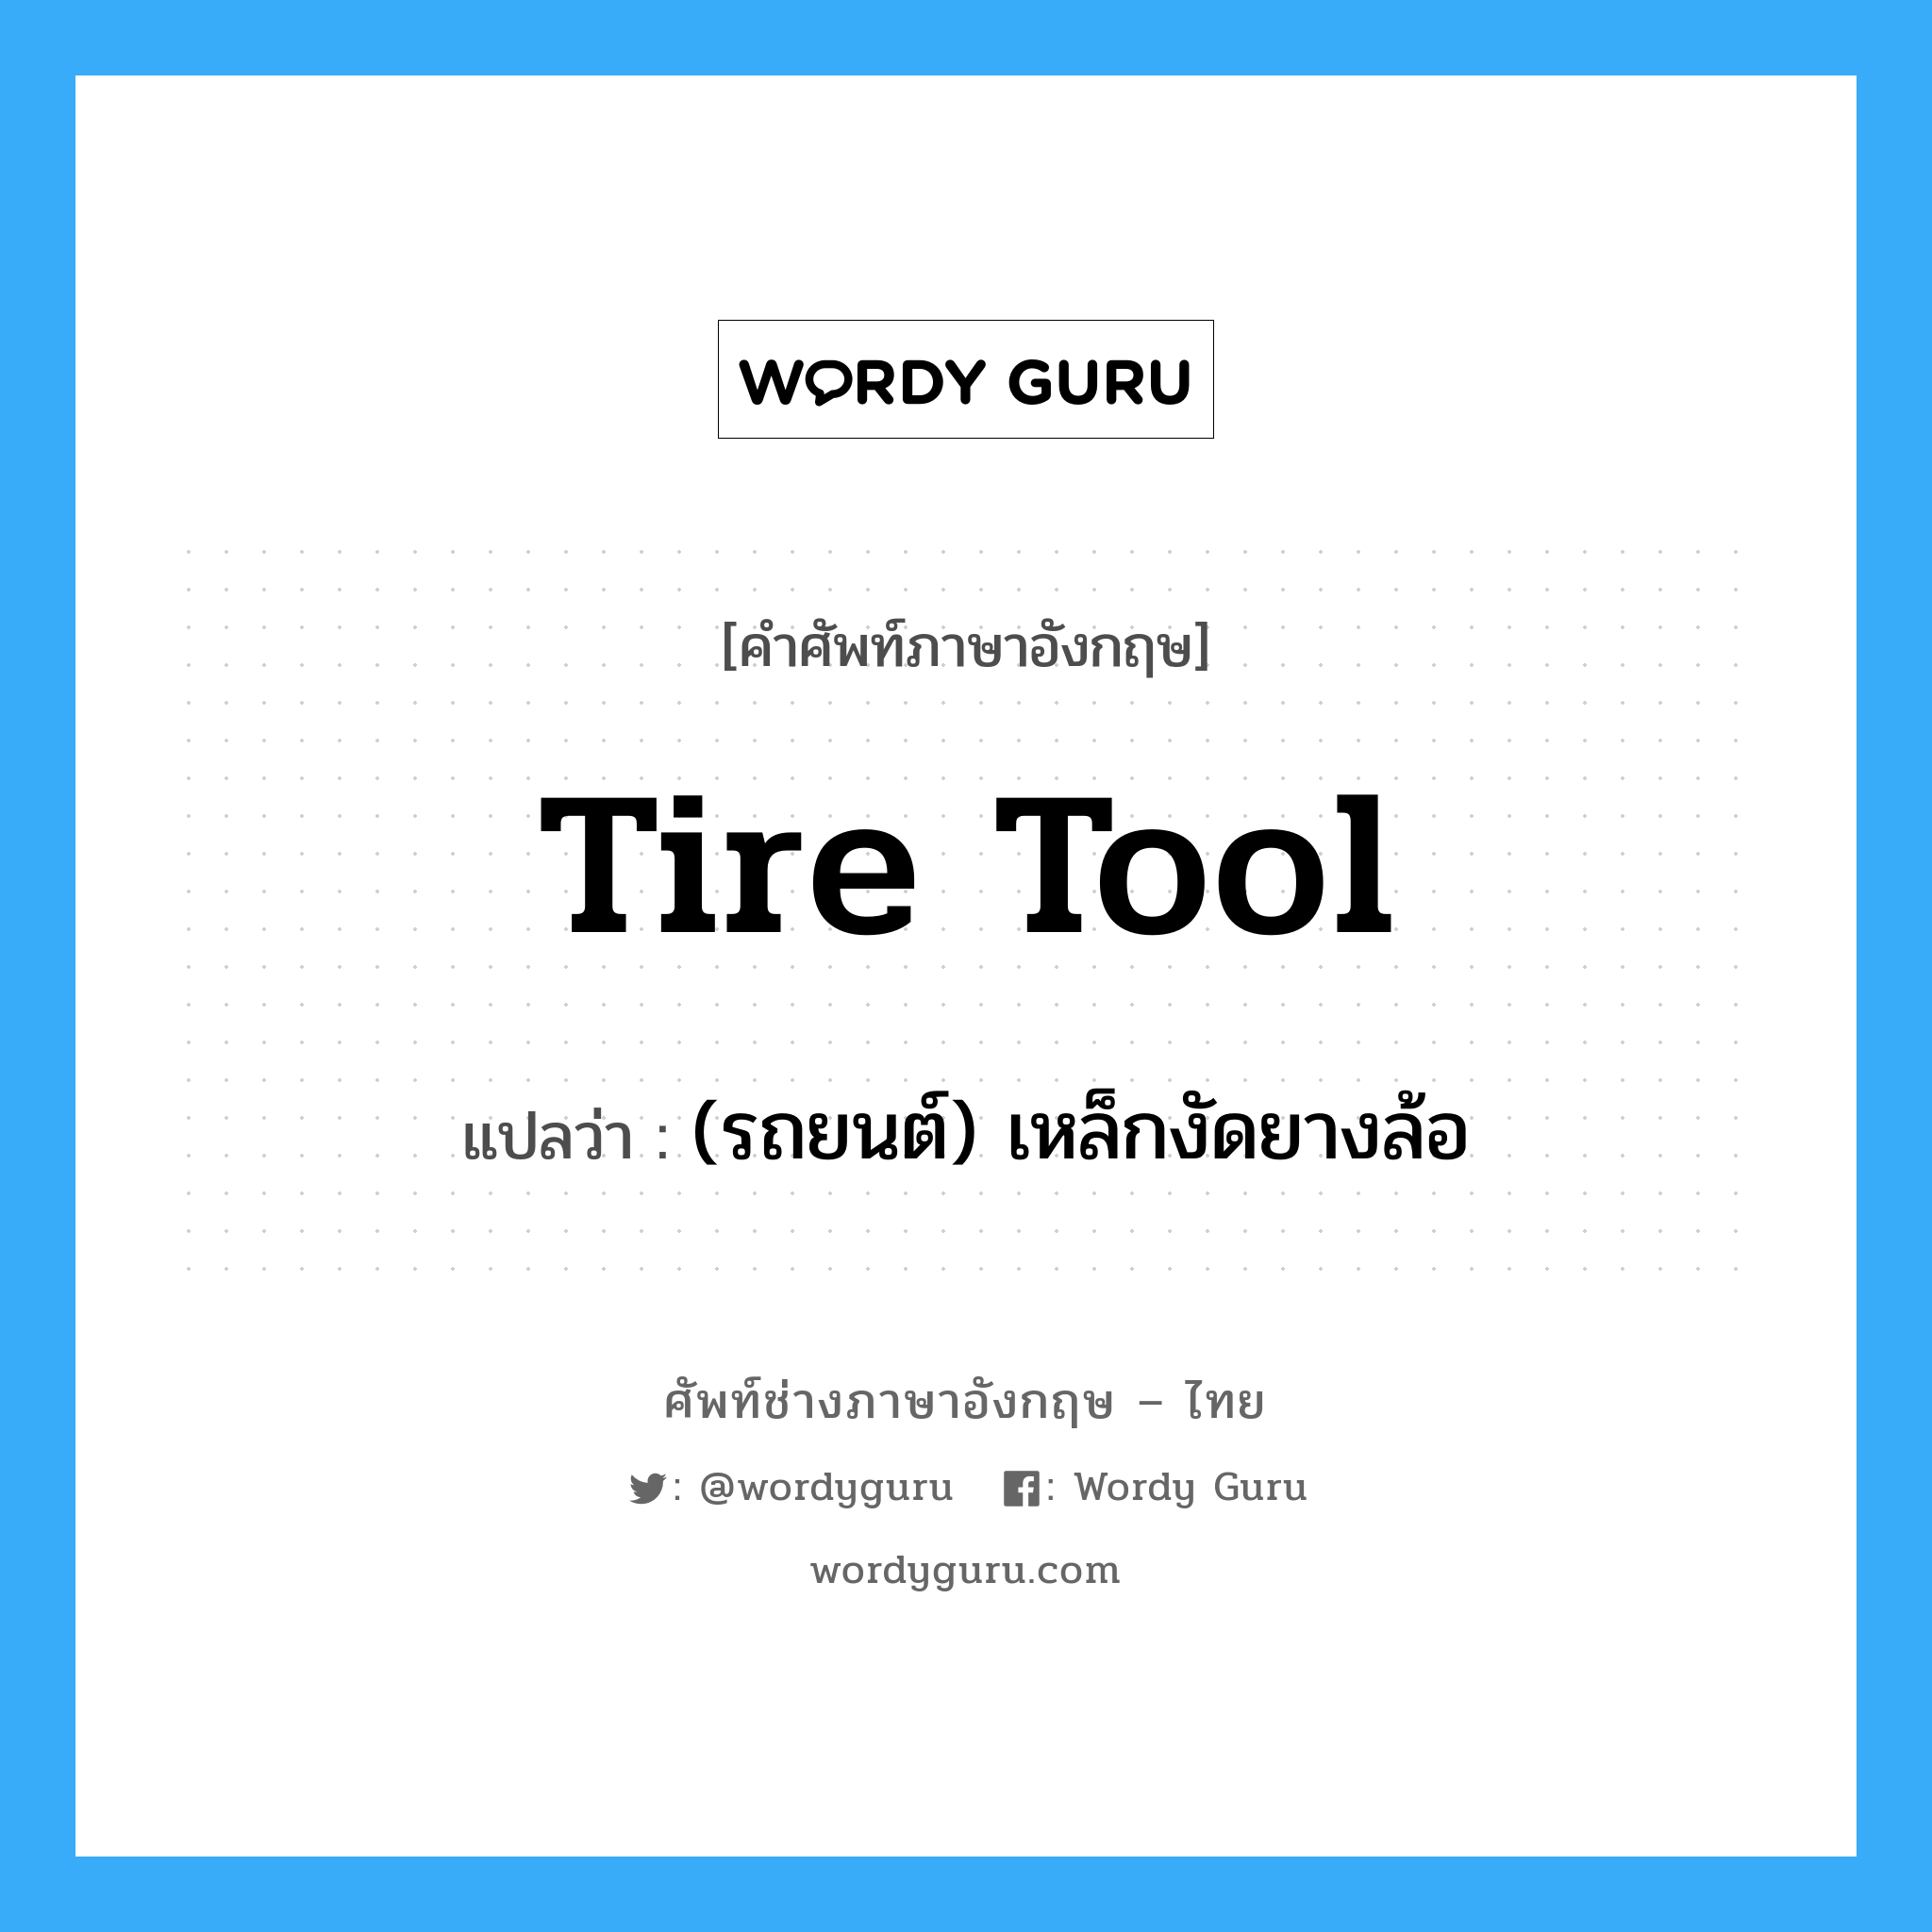 (รถยนต์) เหล็กงัดยางล้อ ภาษาอังกฤษ?, คำศัพท์ช่างภาษาอังกฤษ - ไทย (รถยนต์) เหล็กงัดยางล้อ คำศัพท์ภาษาอังกฤษ (รถยนต์) เหล็กงัดยางล้อ แปลว่า tire tool